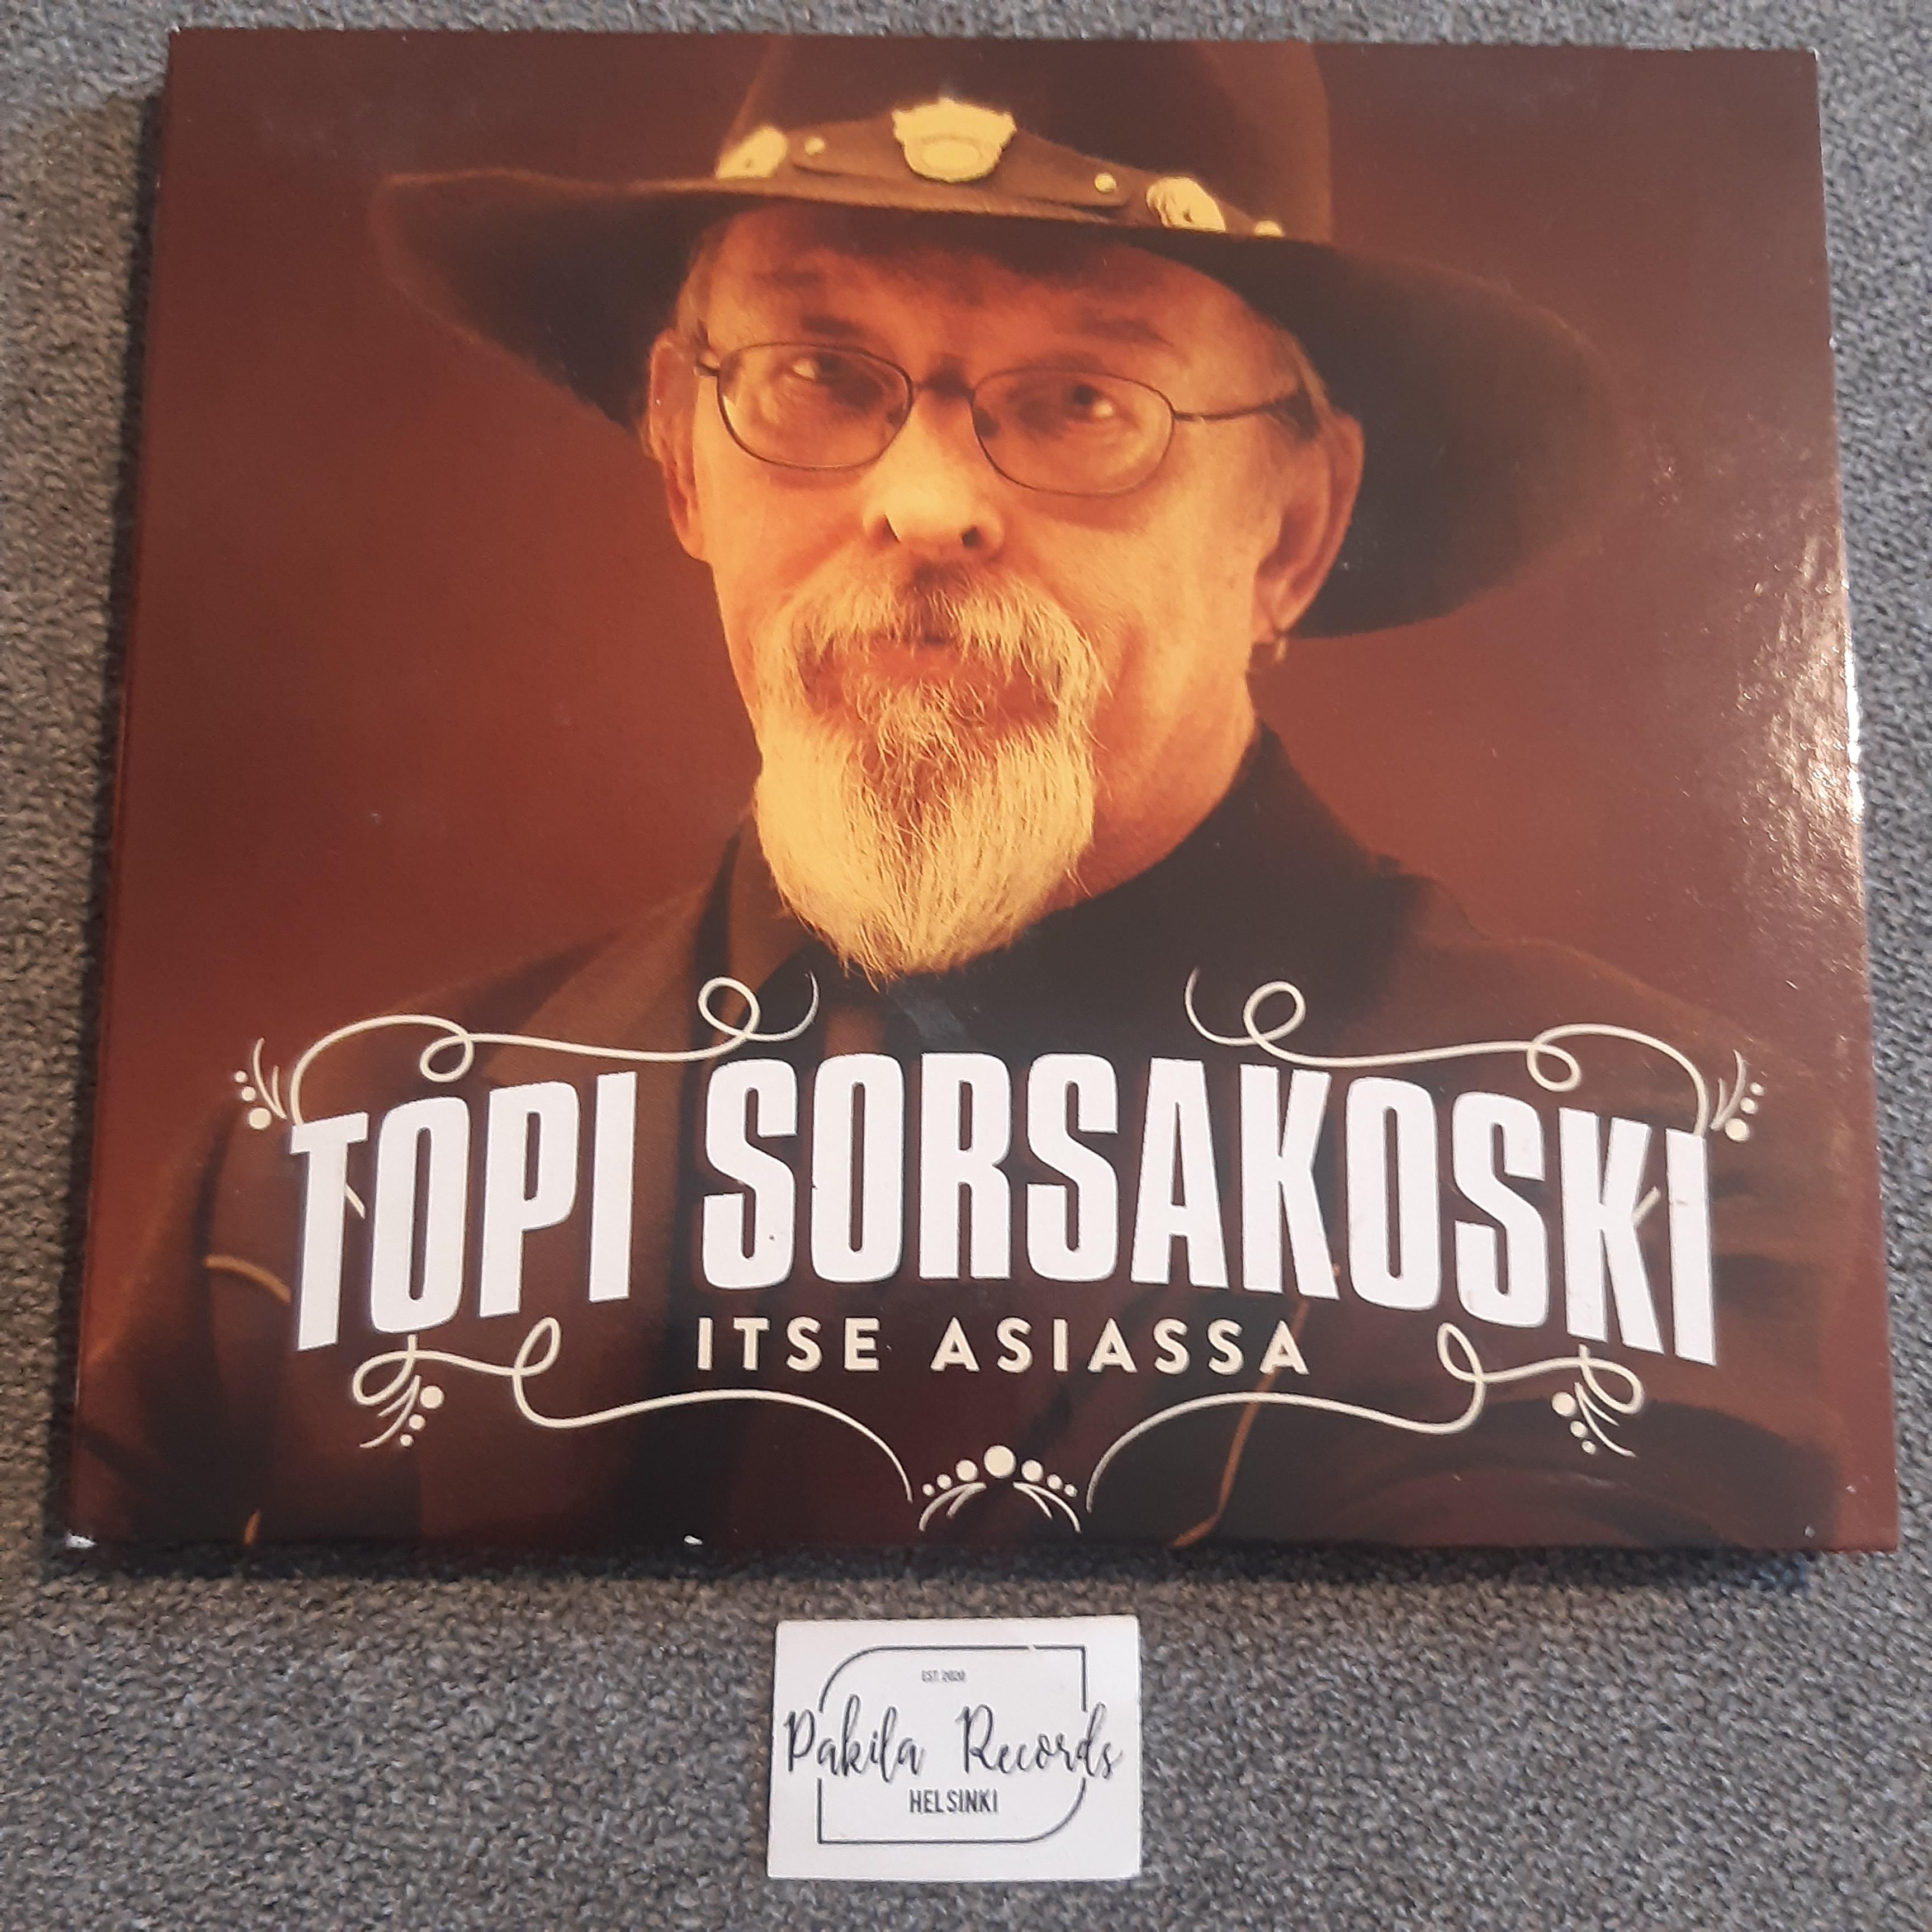 Topi Sorsakoski - Itse asiassa - CD (käytetty)